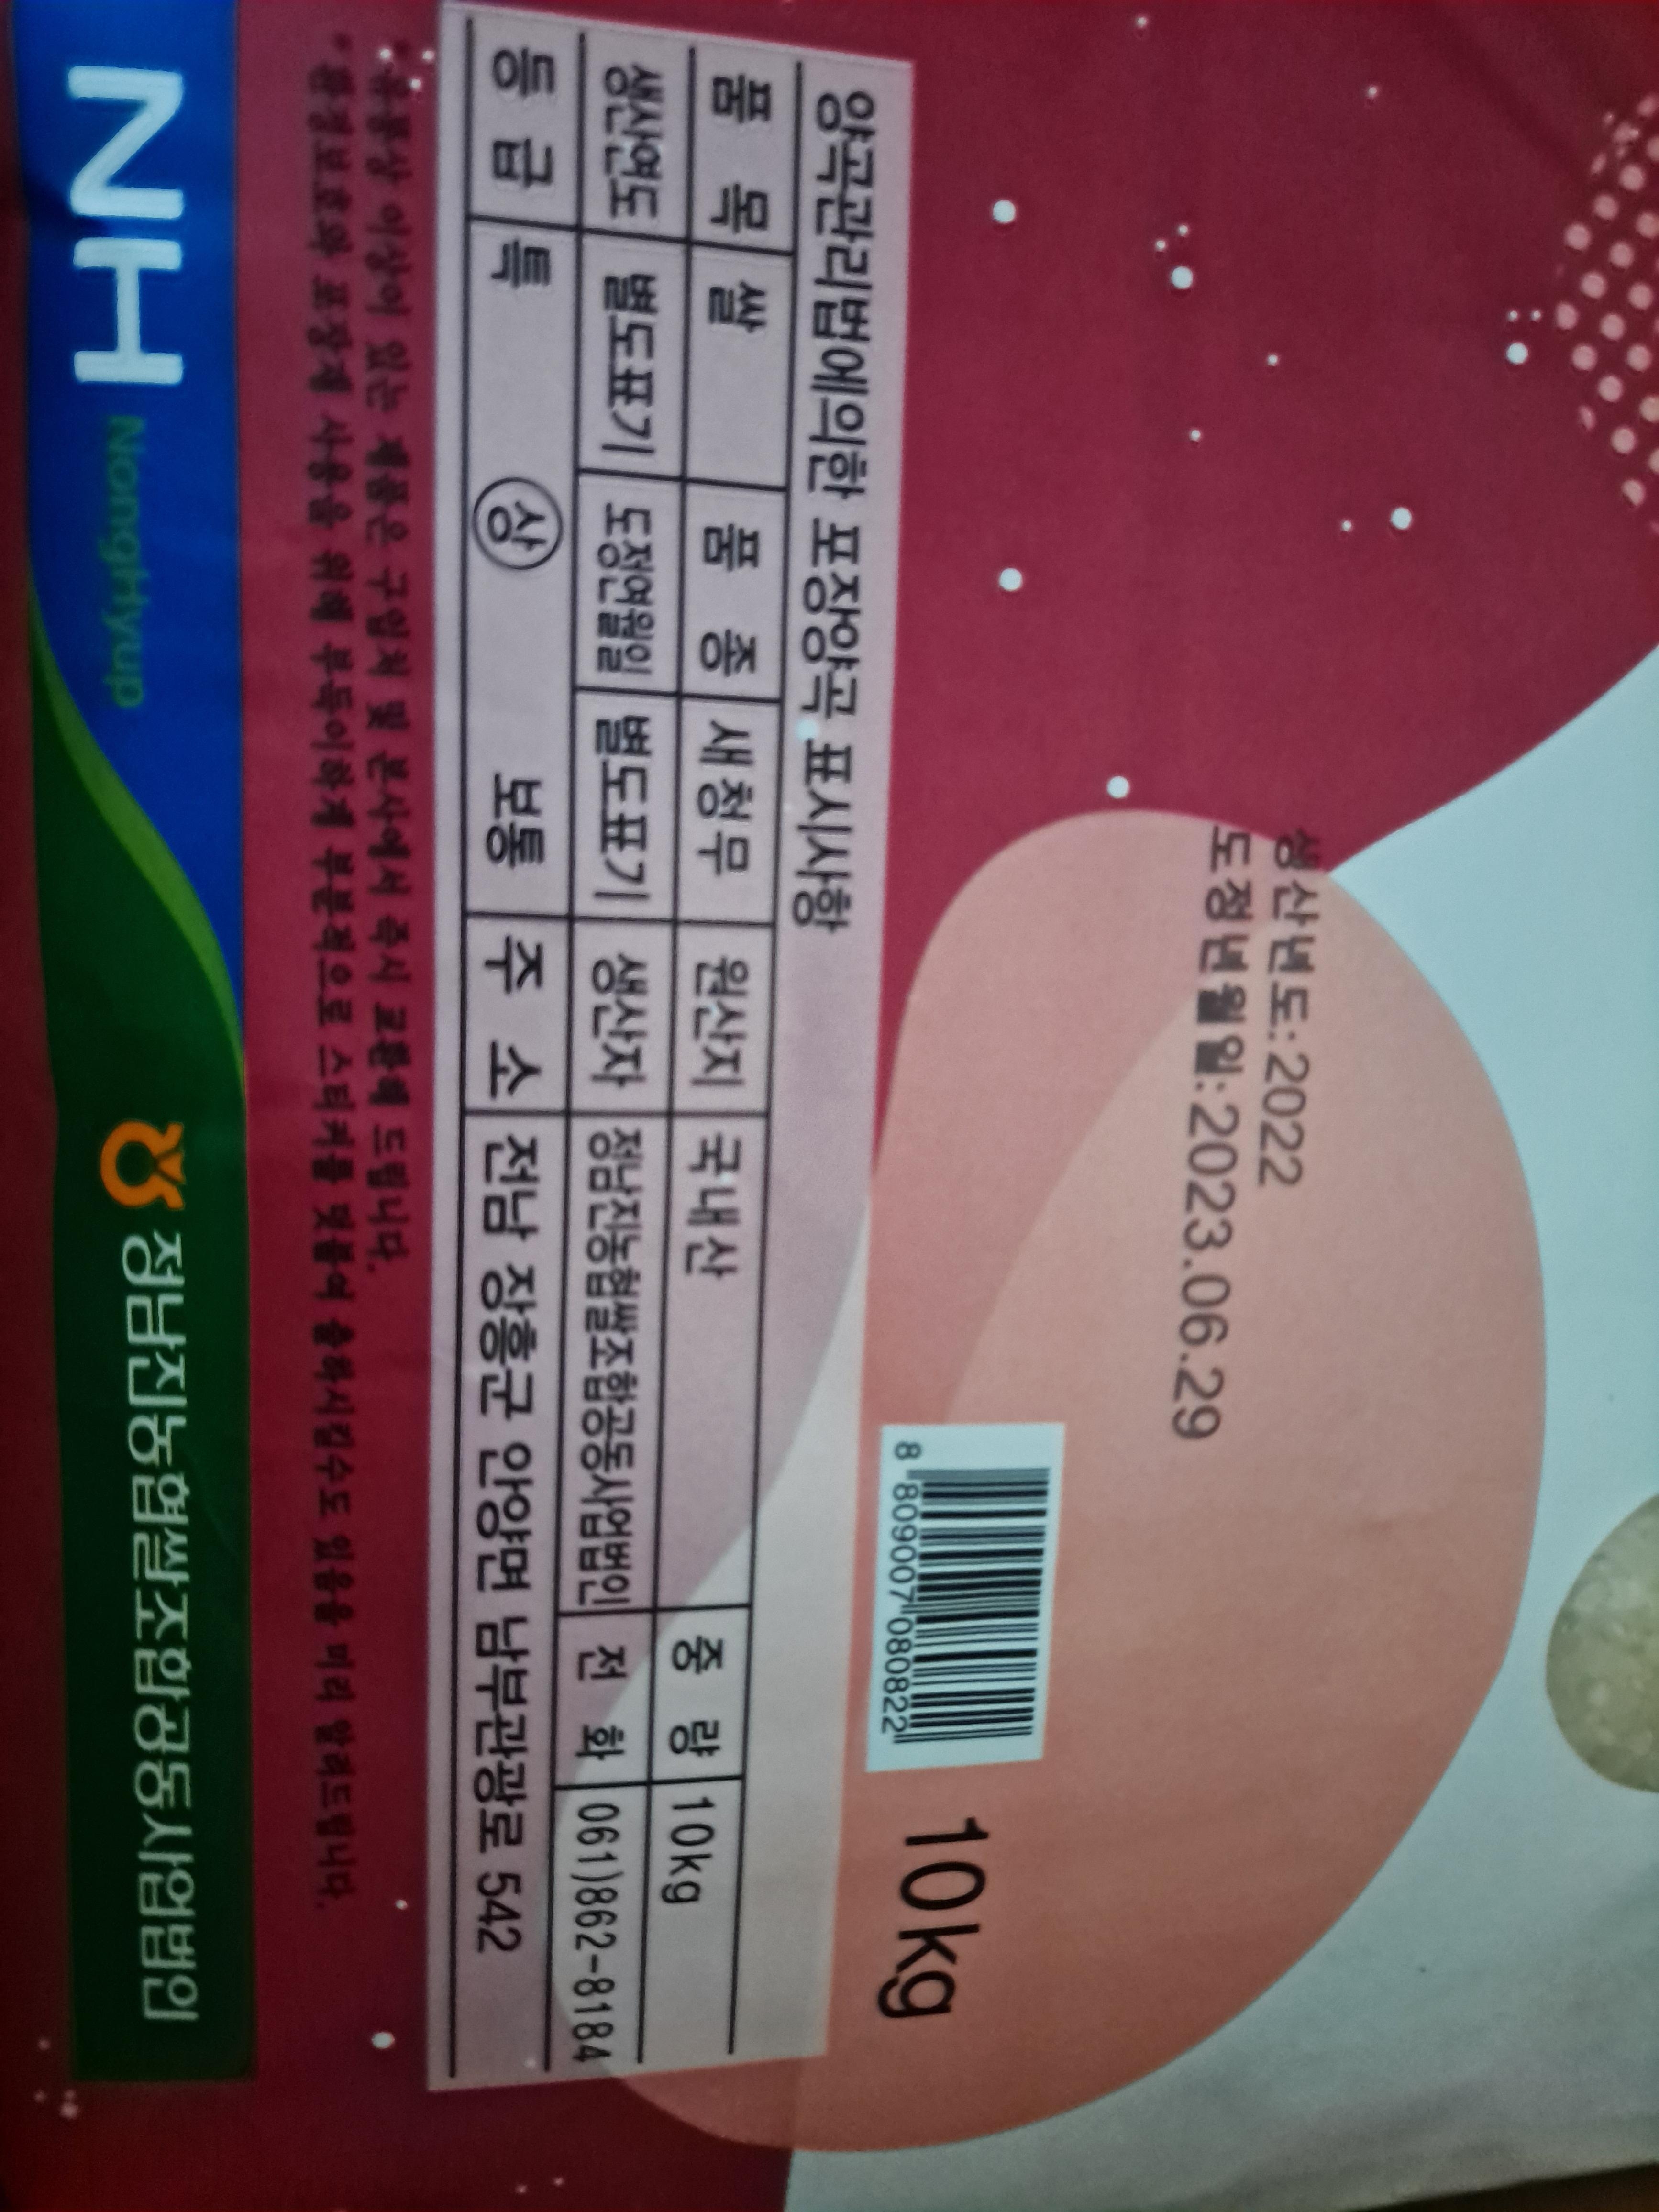 (정남진농협) GAP인증 신선하고 맛있는 23년 쌀 새청무 10kg